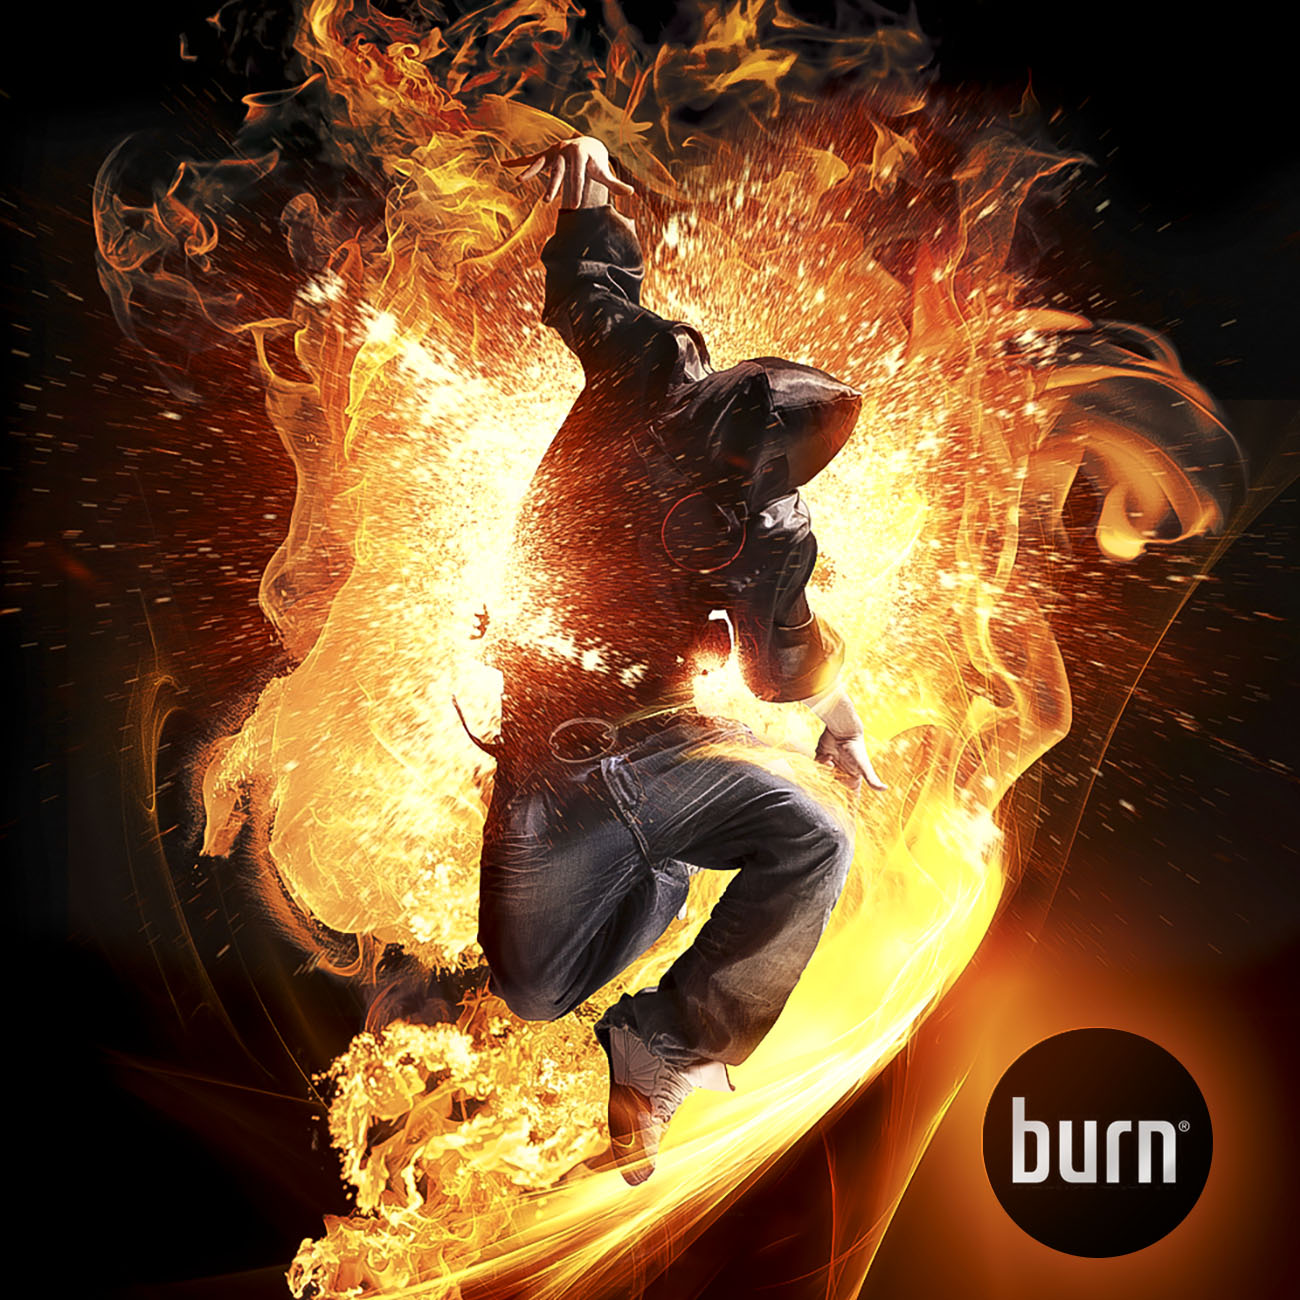 KULT Burn nightlife visual 1